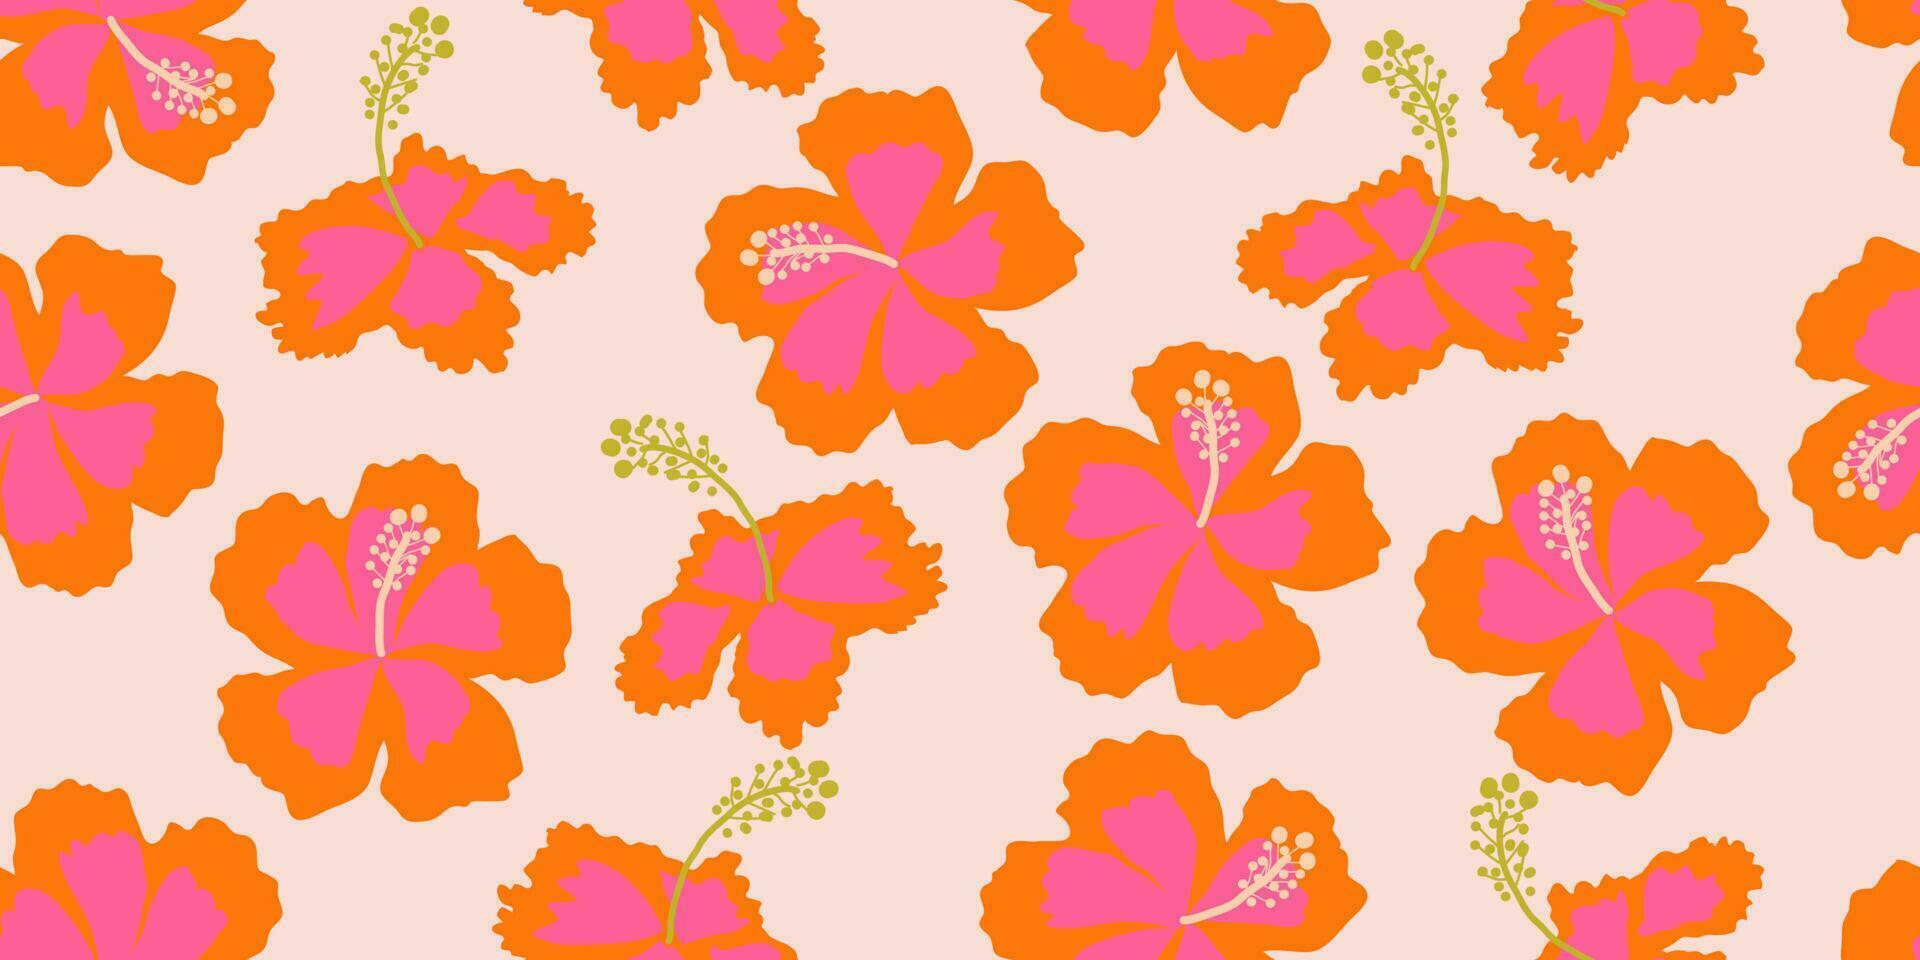 hand- getrokken hibiscus bloemen, naadloos patronen met bloemen voor kleding stof, textiel, kleding, omhulsel papier, omslag, banier, interieur decor, abstract achtergronden. vector